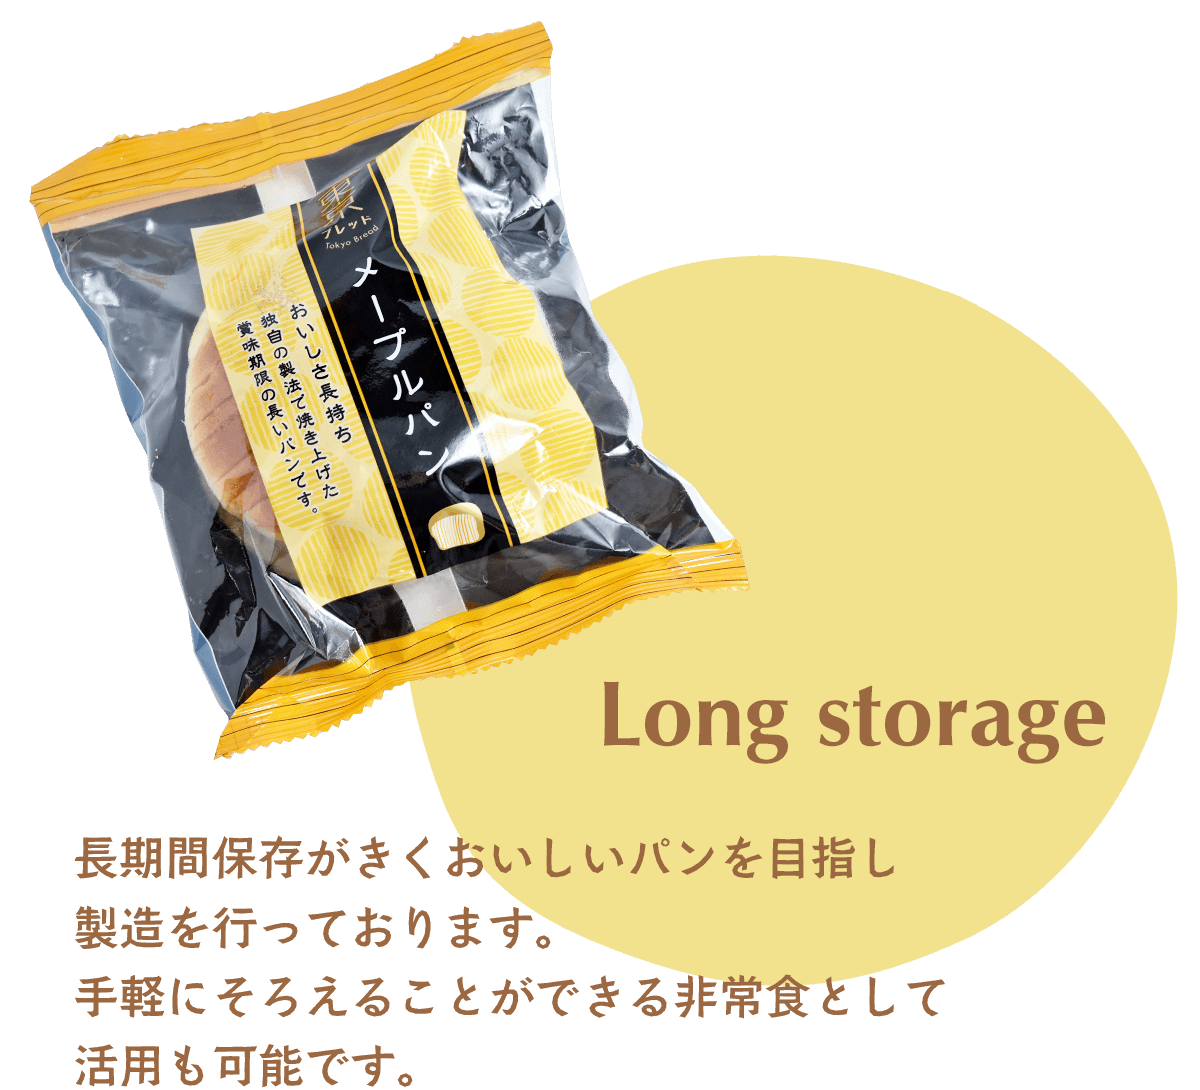 価格を100円に抑え、長期間保存がきくおいしいパンを目指し製造を行っております。